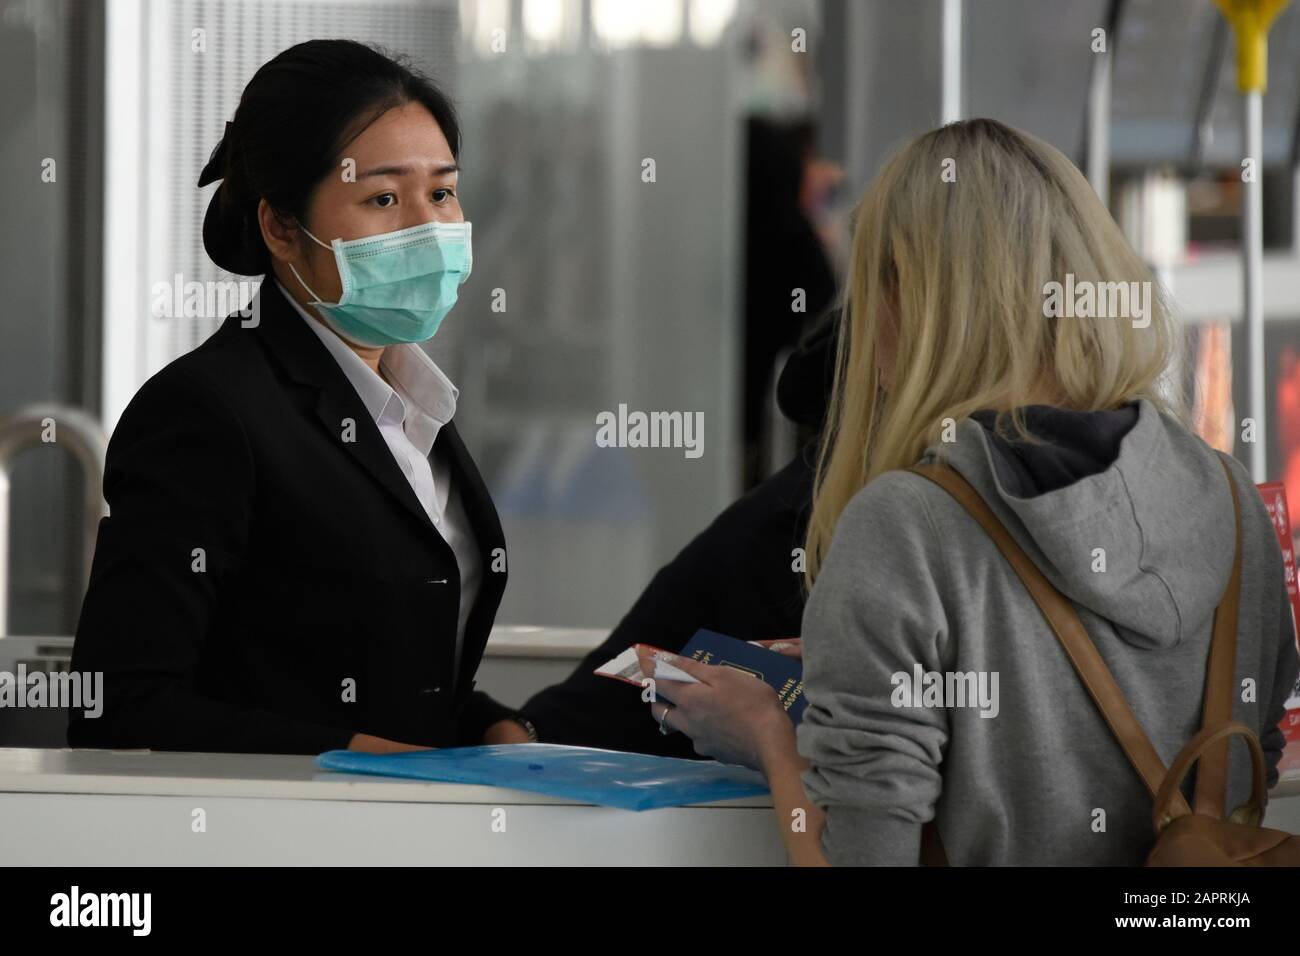 Bangkok, Thaïlande. 24 janvier 2020. 2019-nCoV 2019 Éclosion du virus du Coronavirus du nCoV en Asie du Sud-est. Le personnel et Les Passagers portent des masques de protection contre Coronavirus, l'aéroport de Suvarnabhumi, Bangkok, Thaïlande. Le personnel et les passagers ont augmenté les mesures de biosécurité en portant des masques de protection du visage après que le Coronavirus a tué 26 personnes confirmées, et le nombre de cas atteint 1000. Il arrive à la veille du nouvel an chinois, où des millions de personnes dans toute l'Asie du Sud-est reviennent traditionnellement chez elles, augmentant le risque de propagation. Crédit: Stephen Barnes/Alay Live News Banque D'Images